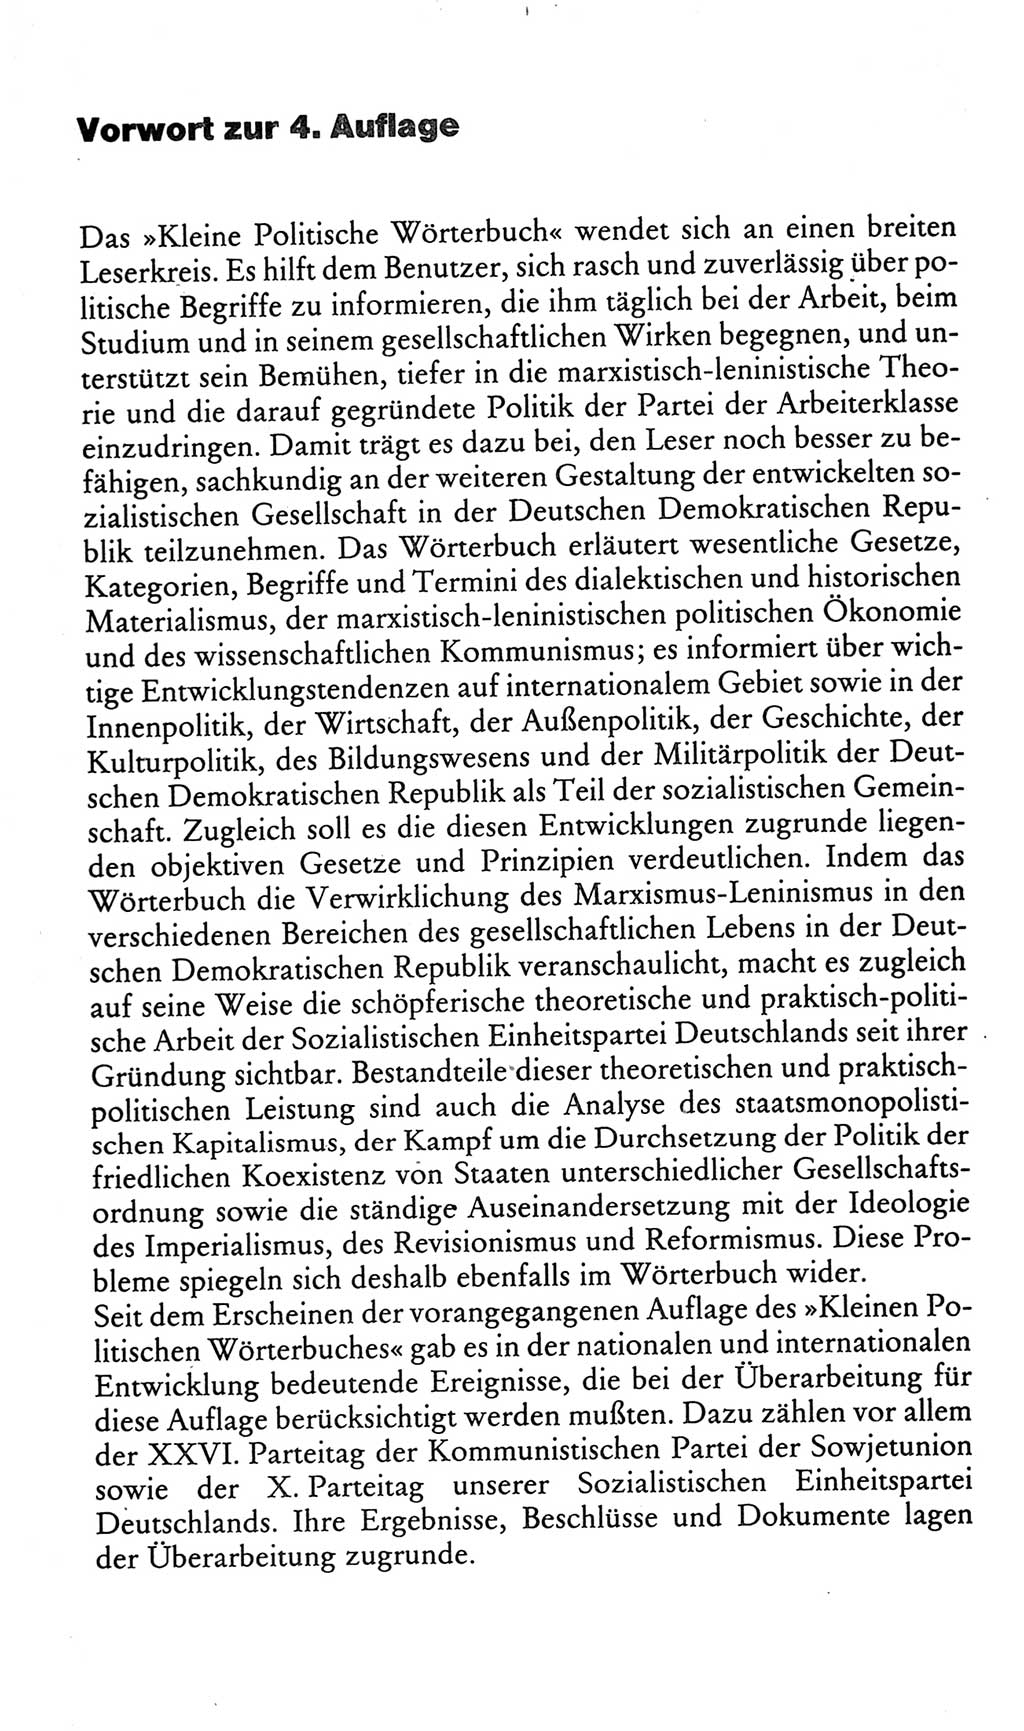 Kleines politisches Wörterbuch [Deutsche Demokratische Republik (DDR)] 1986, Seite 7 (Kl. pol. Wb. DDR 1986, S. 7)